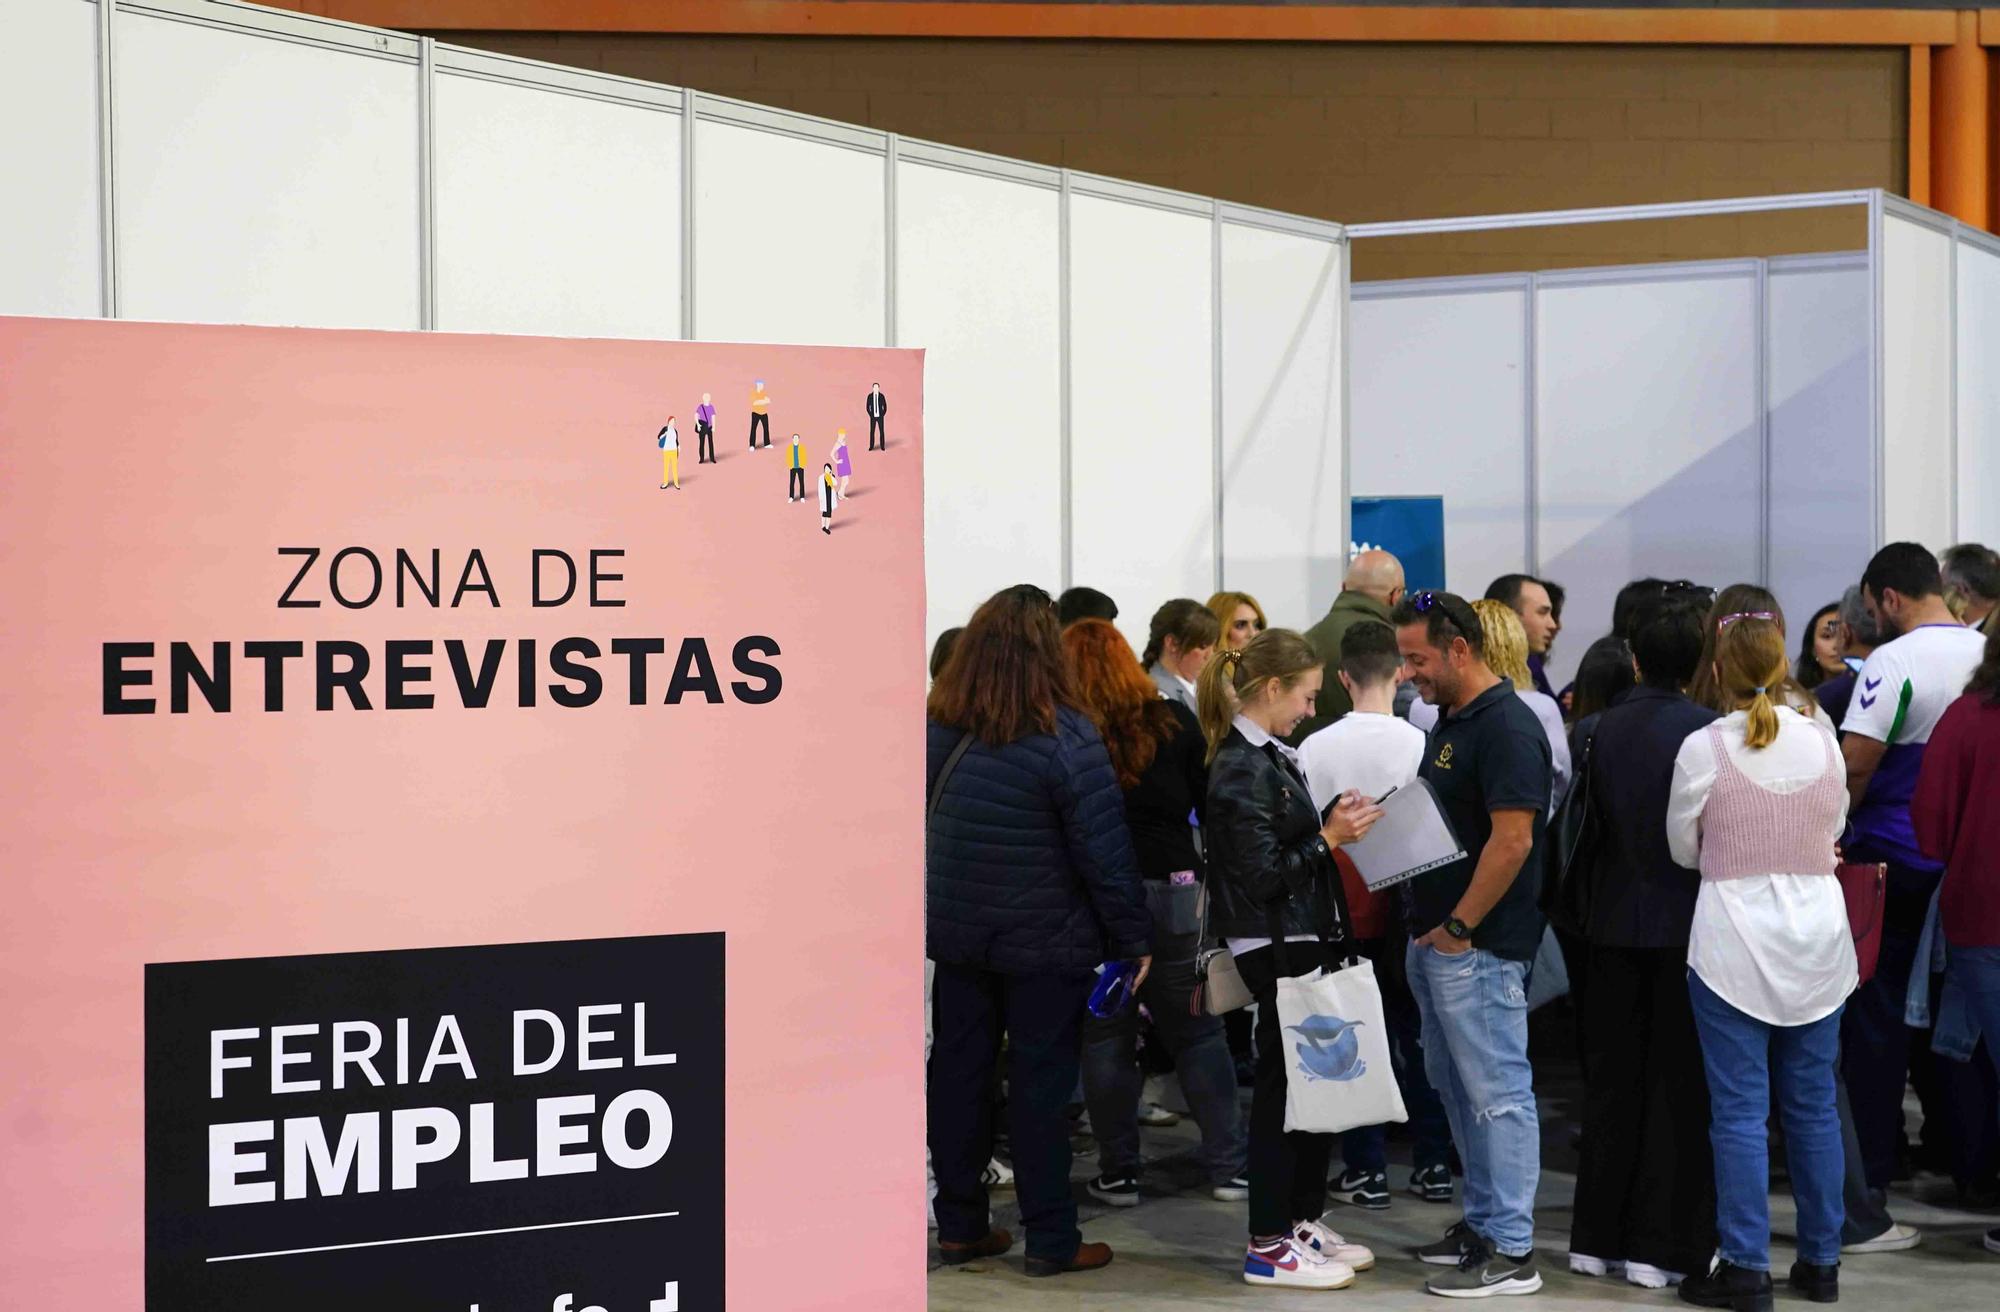 Feria de Empleo organizada por el IMFE, en el Palacio de Ferias y Congresos de la ciudad.